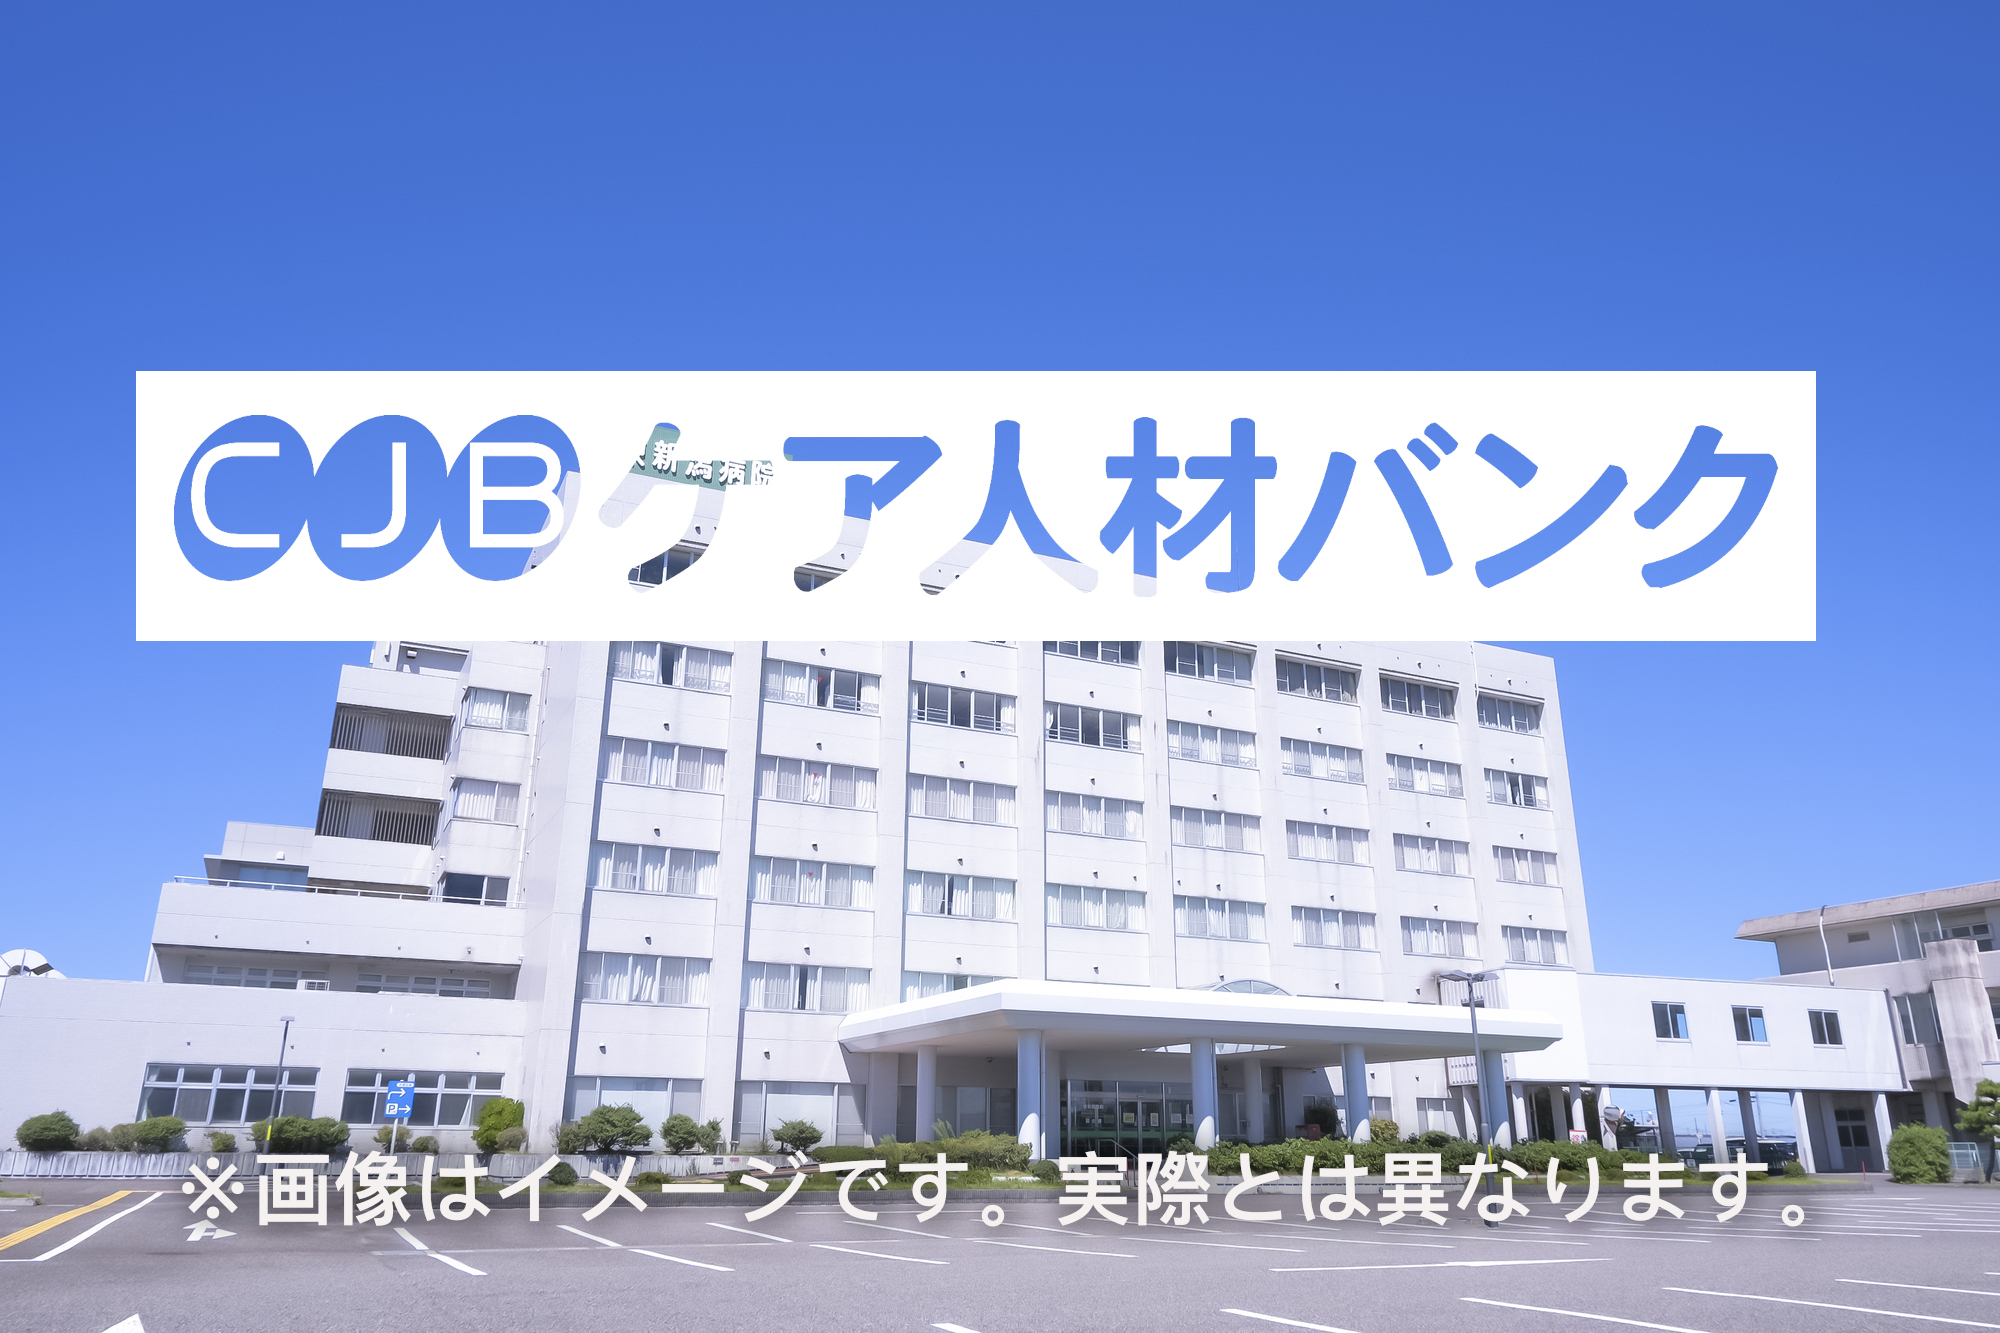 内田病院 のイメージ画像